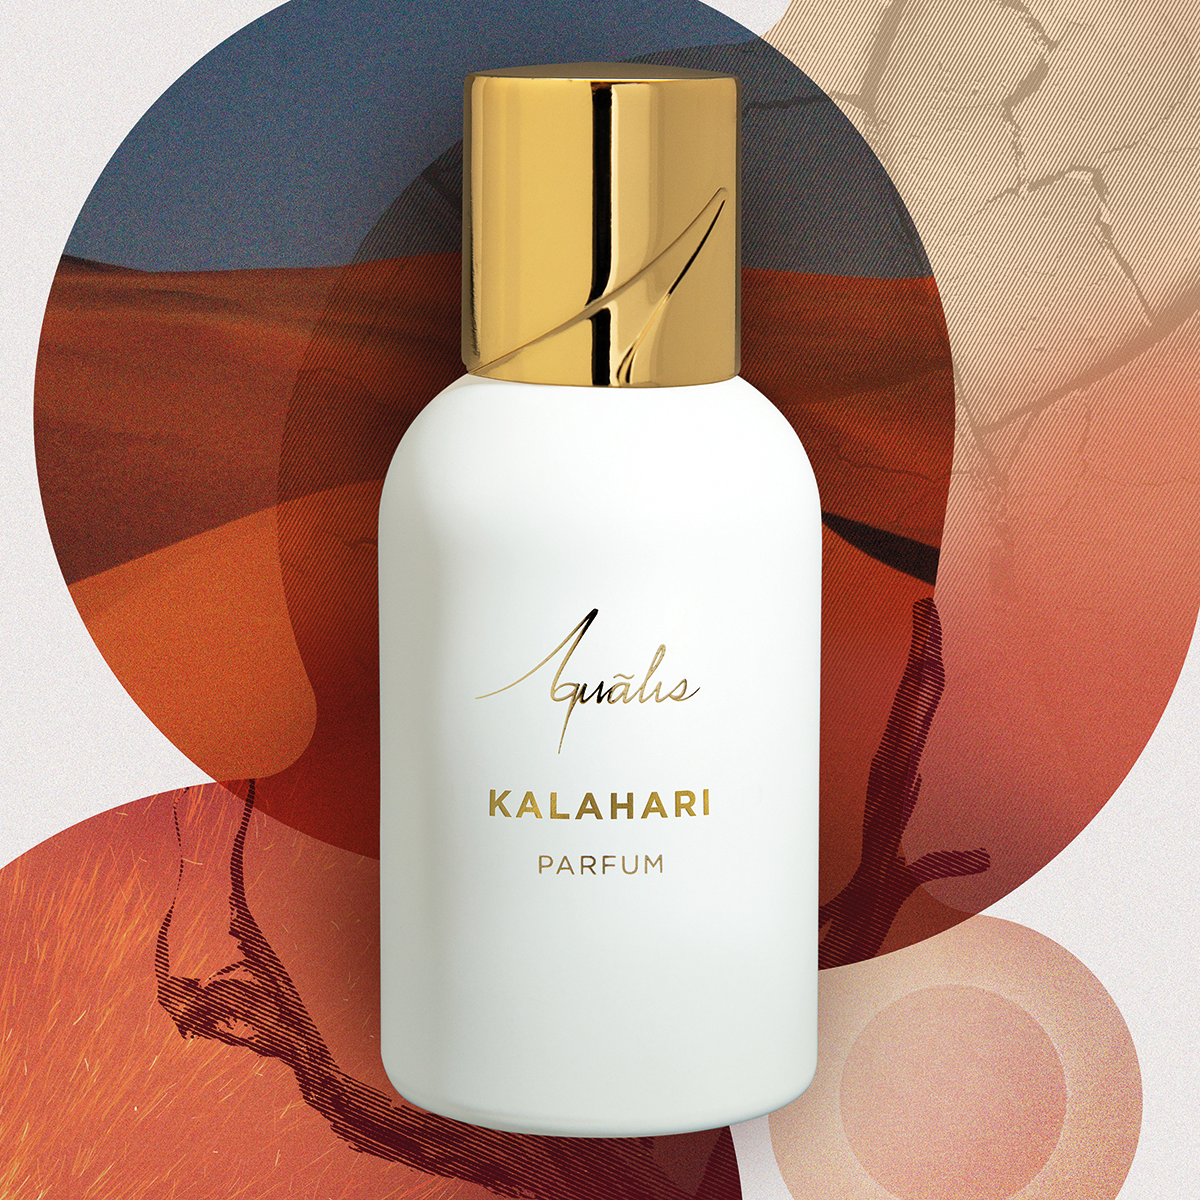 Aqualis - Kalahari Extrait de Parfum